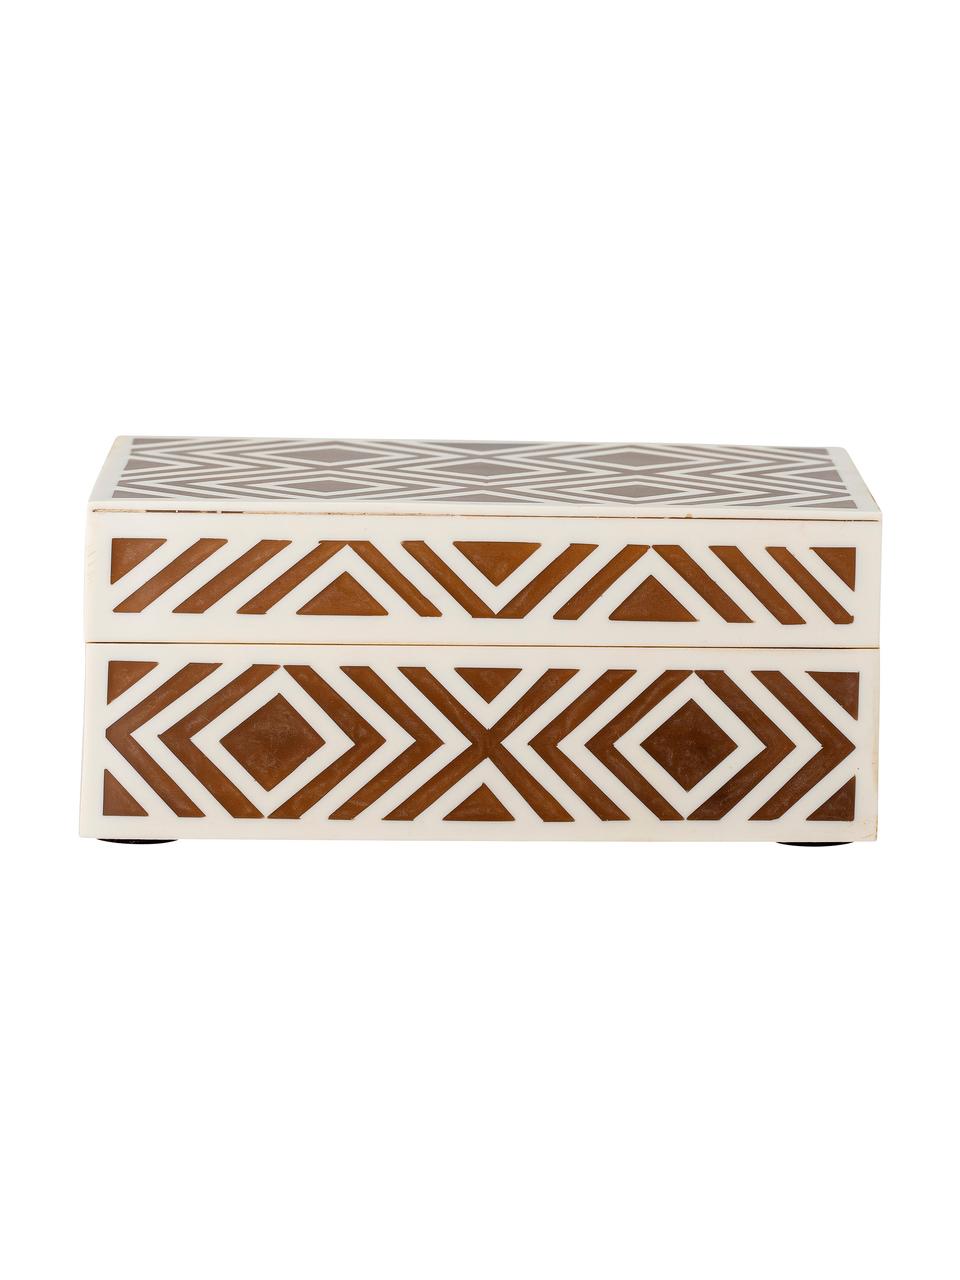 Schmuckbox Henny, Mitteldichte Holzfaserplatte (MDF), Polyresin beschichtet, Braun, Cremeweiss, 18 x 8 cm